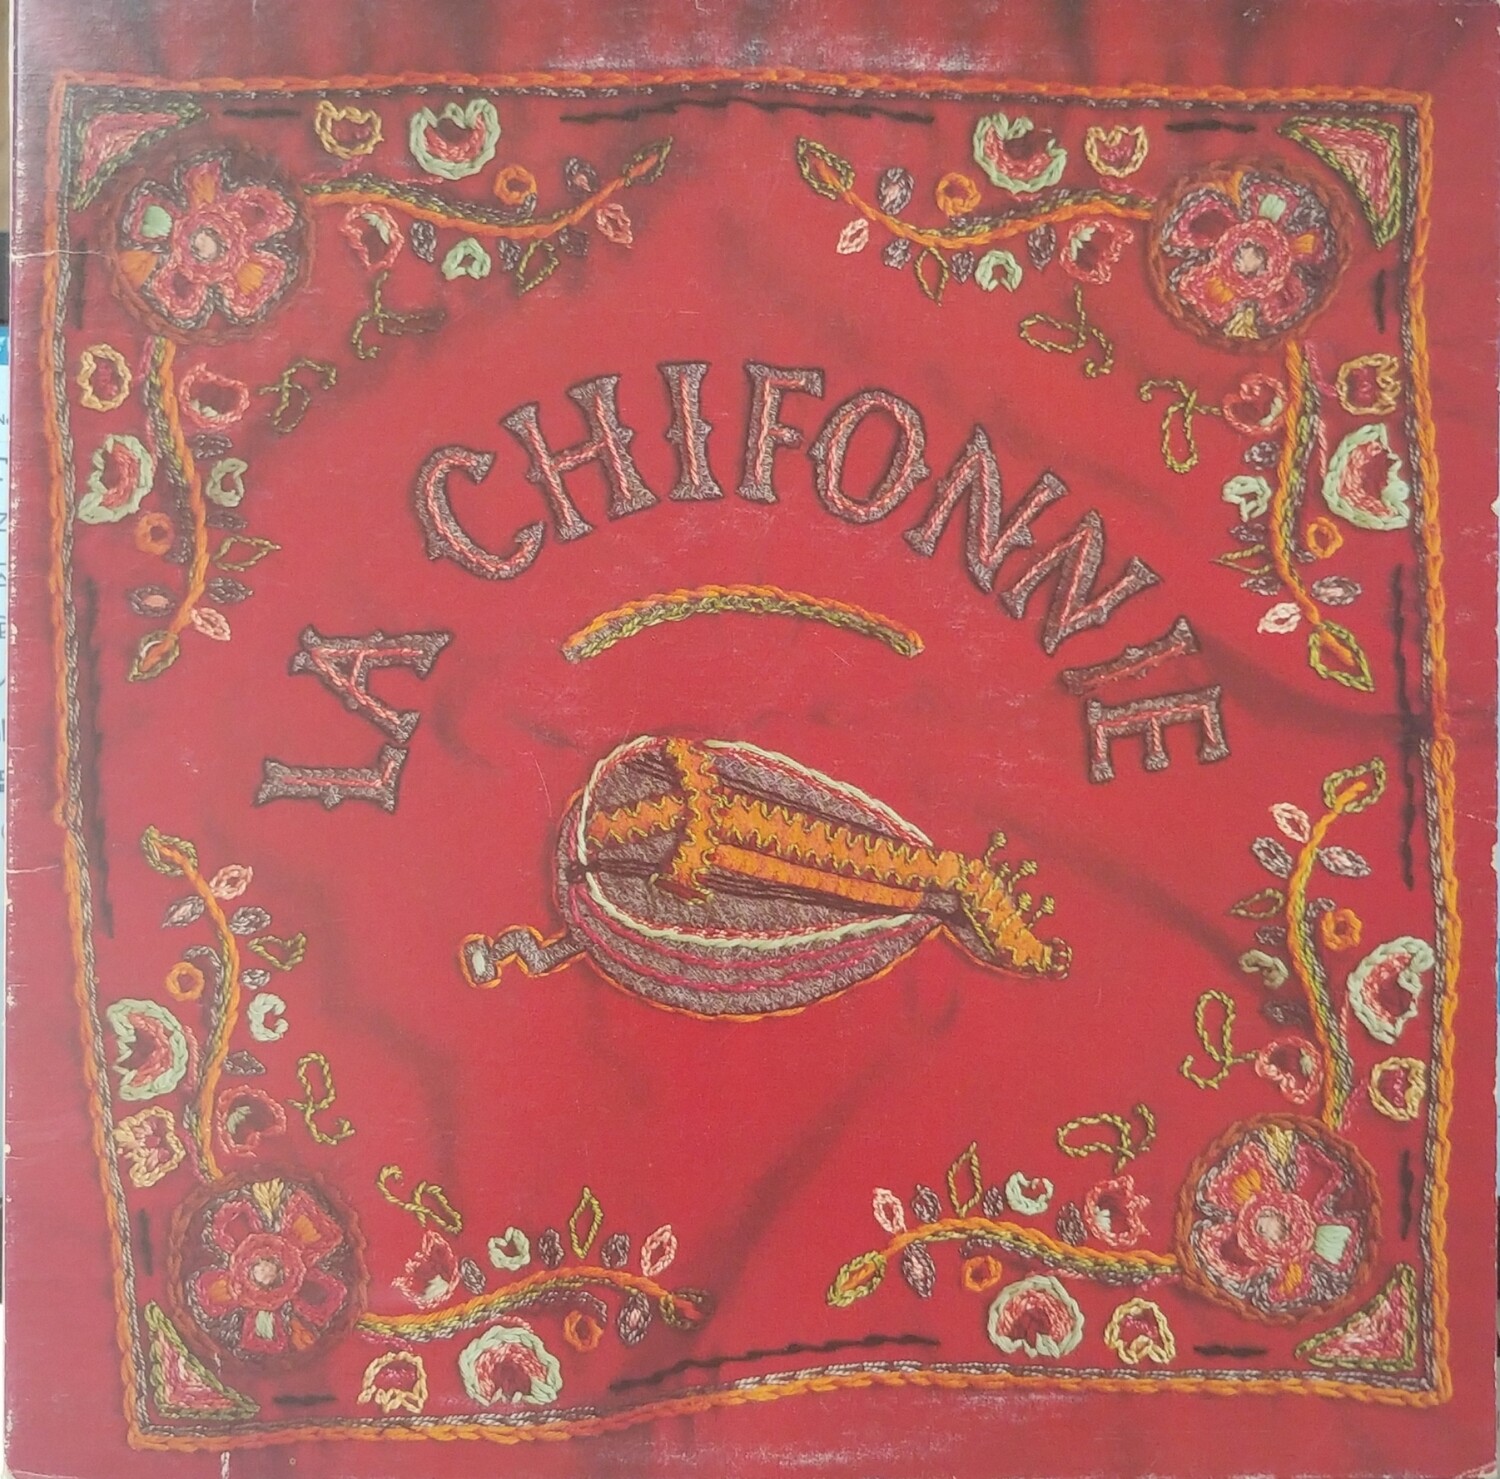 La Chifonnie - La Chifonnie